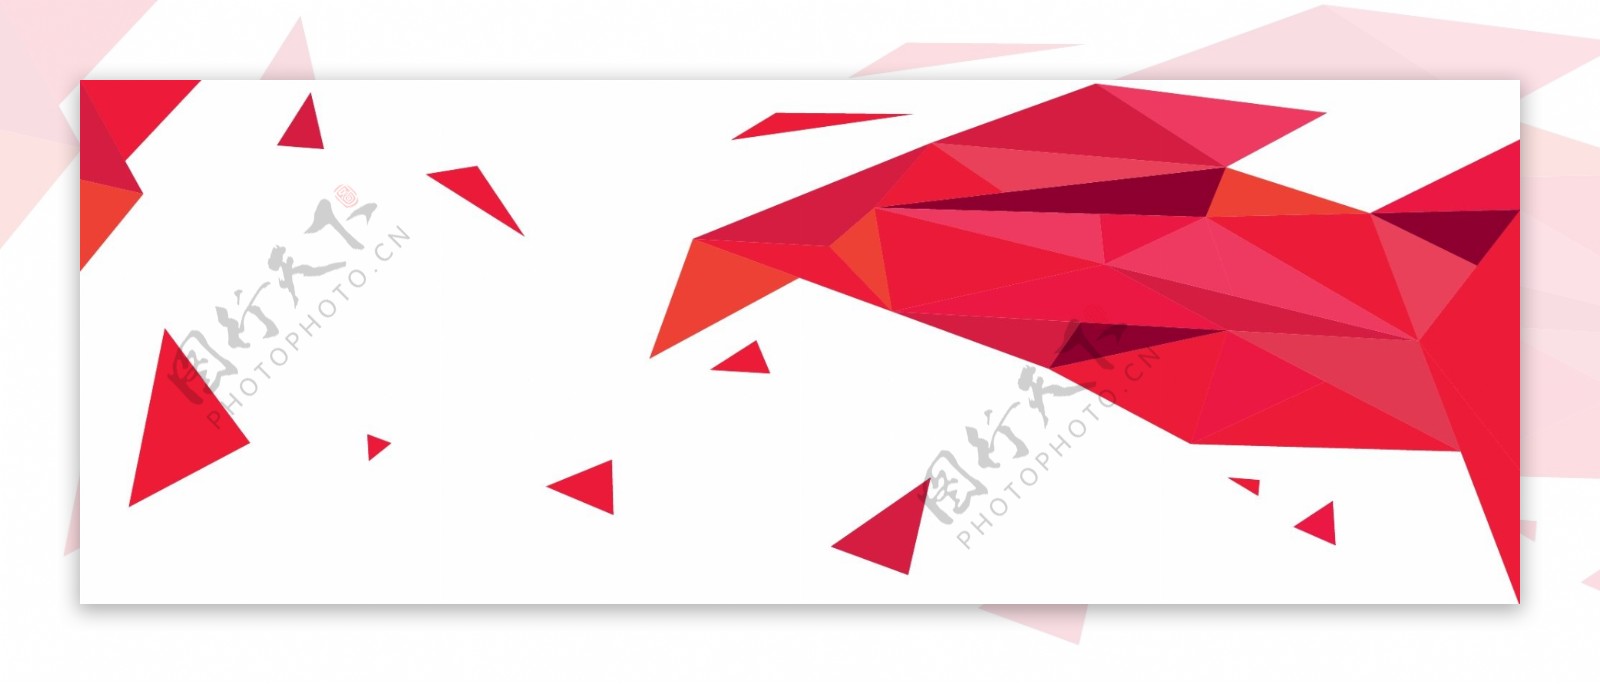 红色渐变三角形多边形banner背景设计